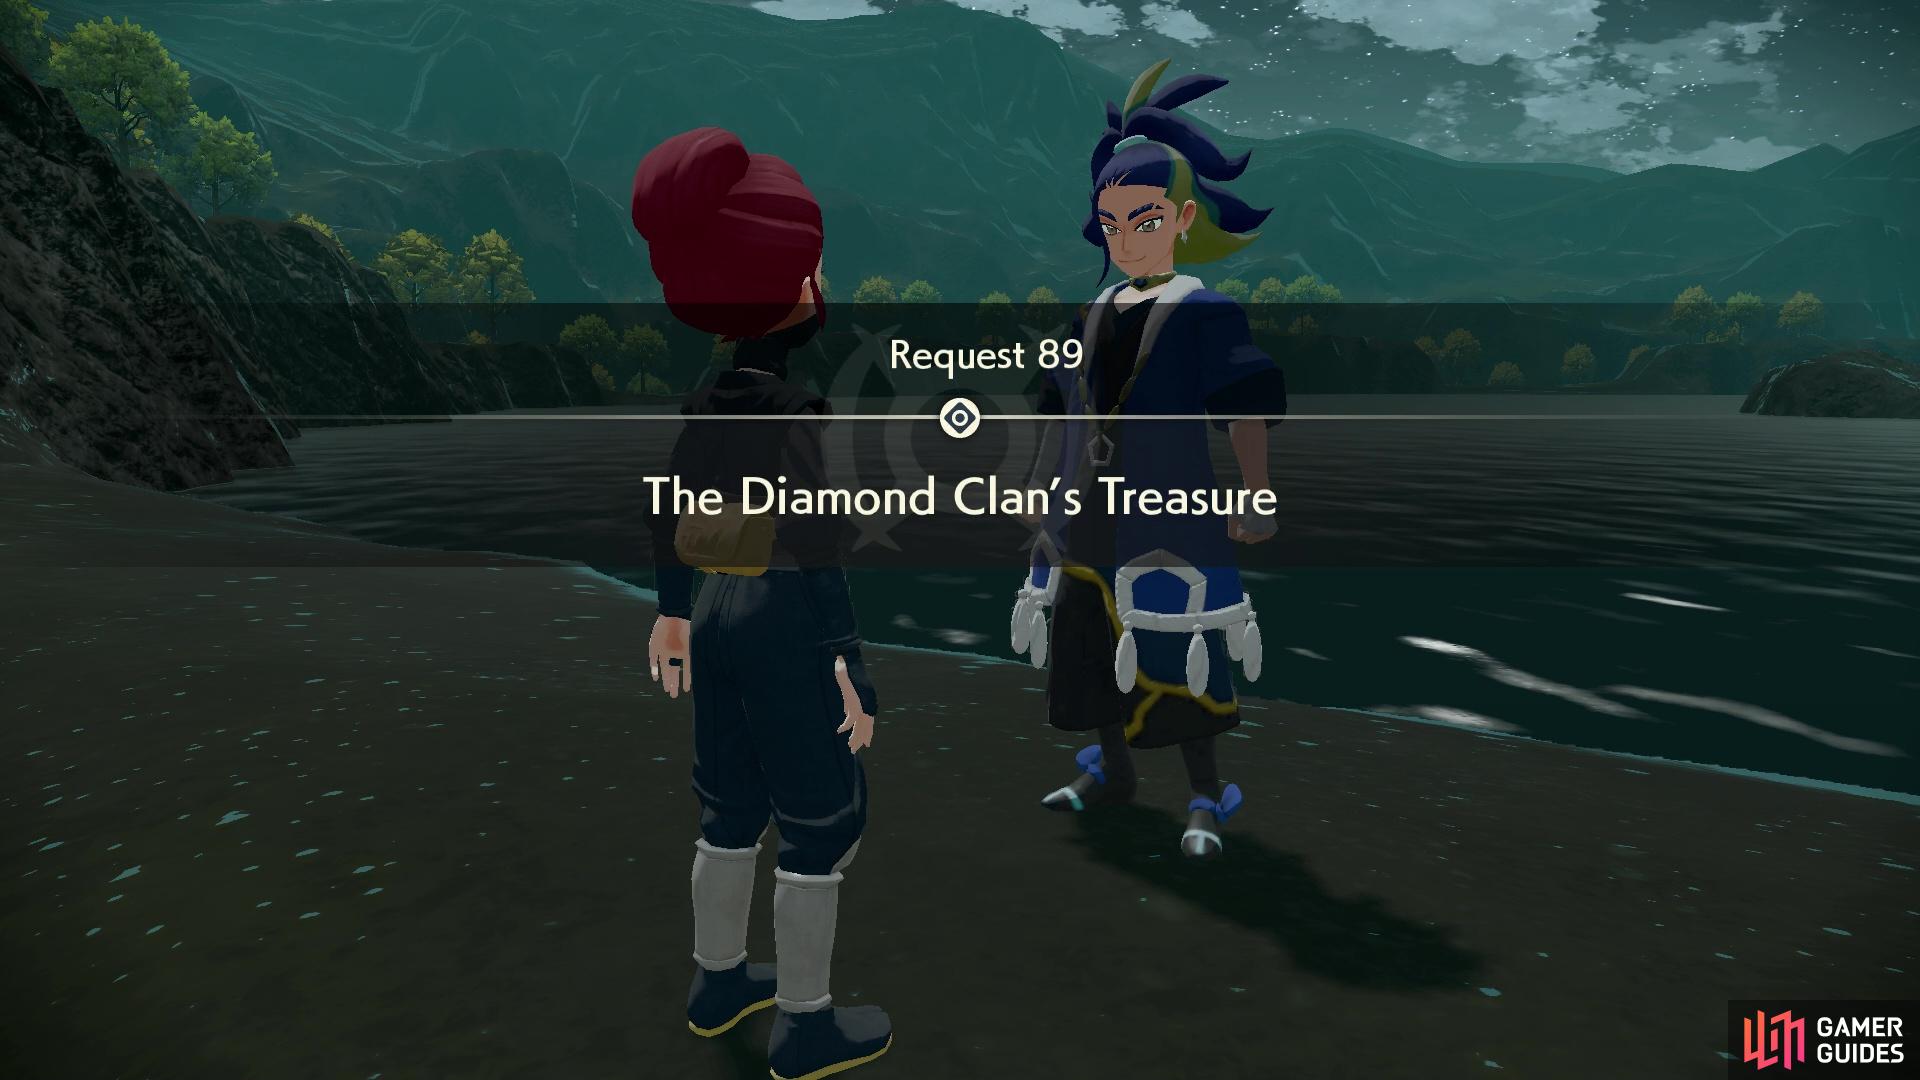 Request 89: The Diamond Clan's Treasure.